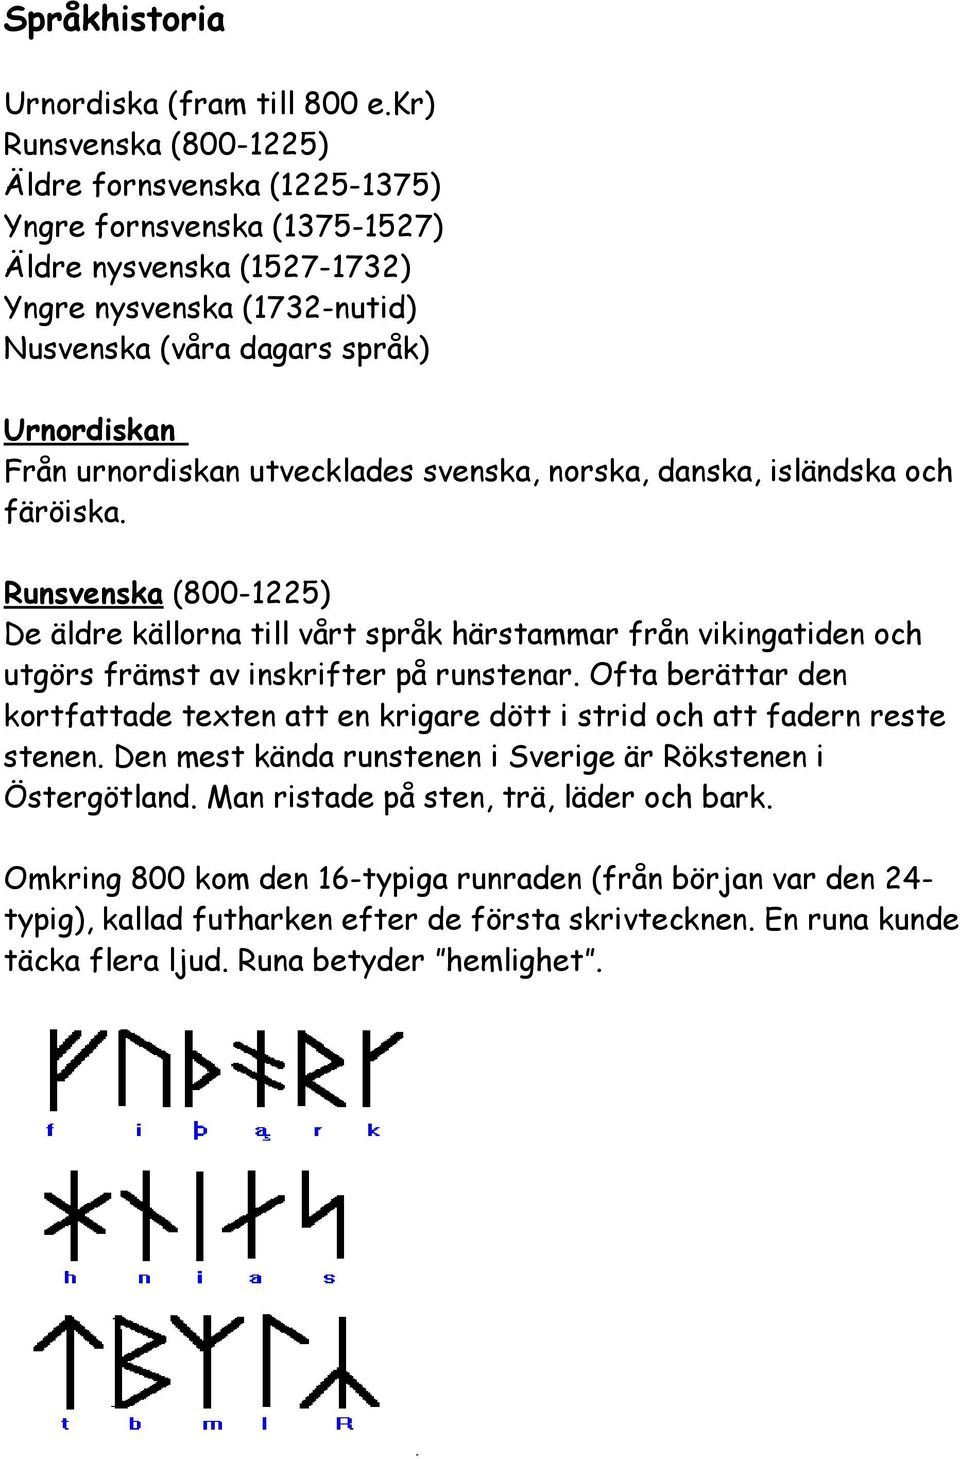 urnordiskan utvecklades svenska, norska, danska, isländska och färöiska.